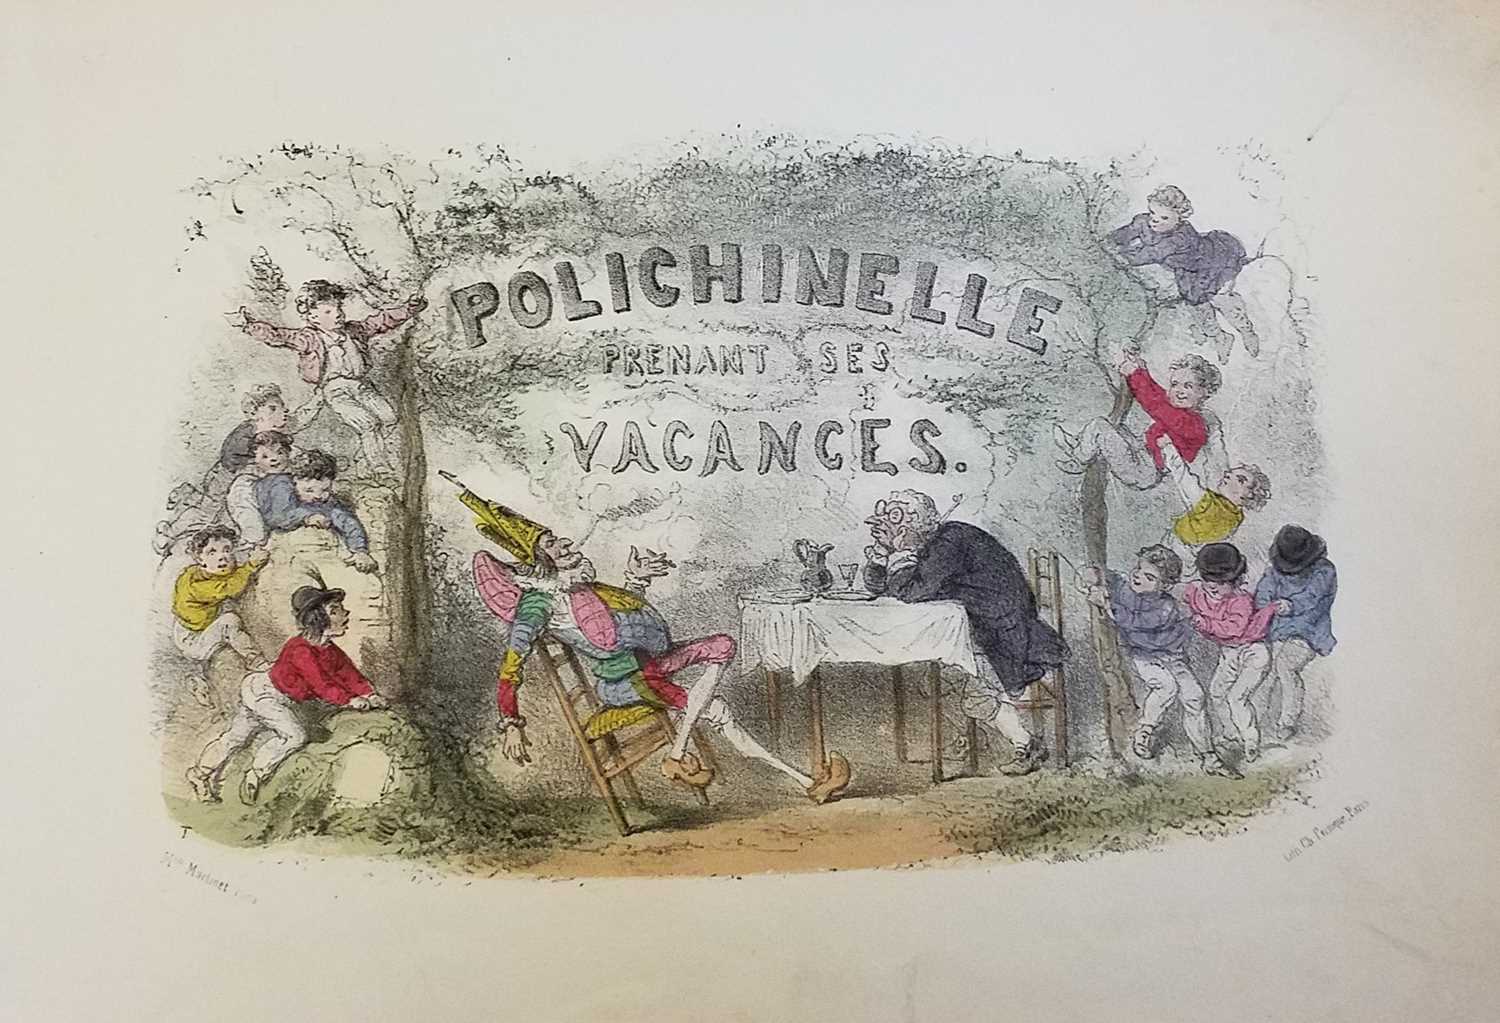 Lot 81 - 1850 Polichinelle Prenant Ses Vacances, Paris, c.1850